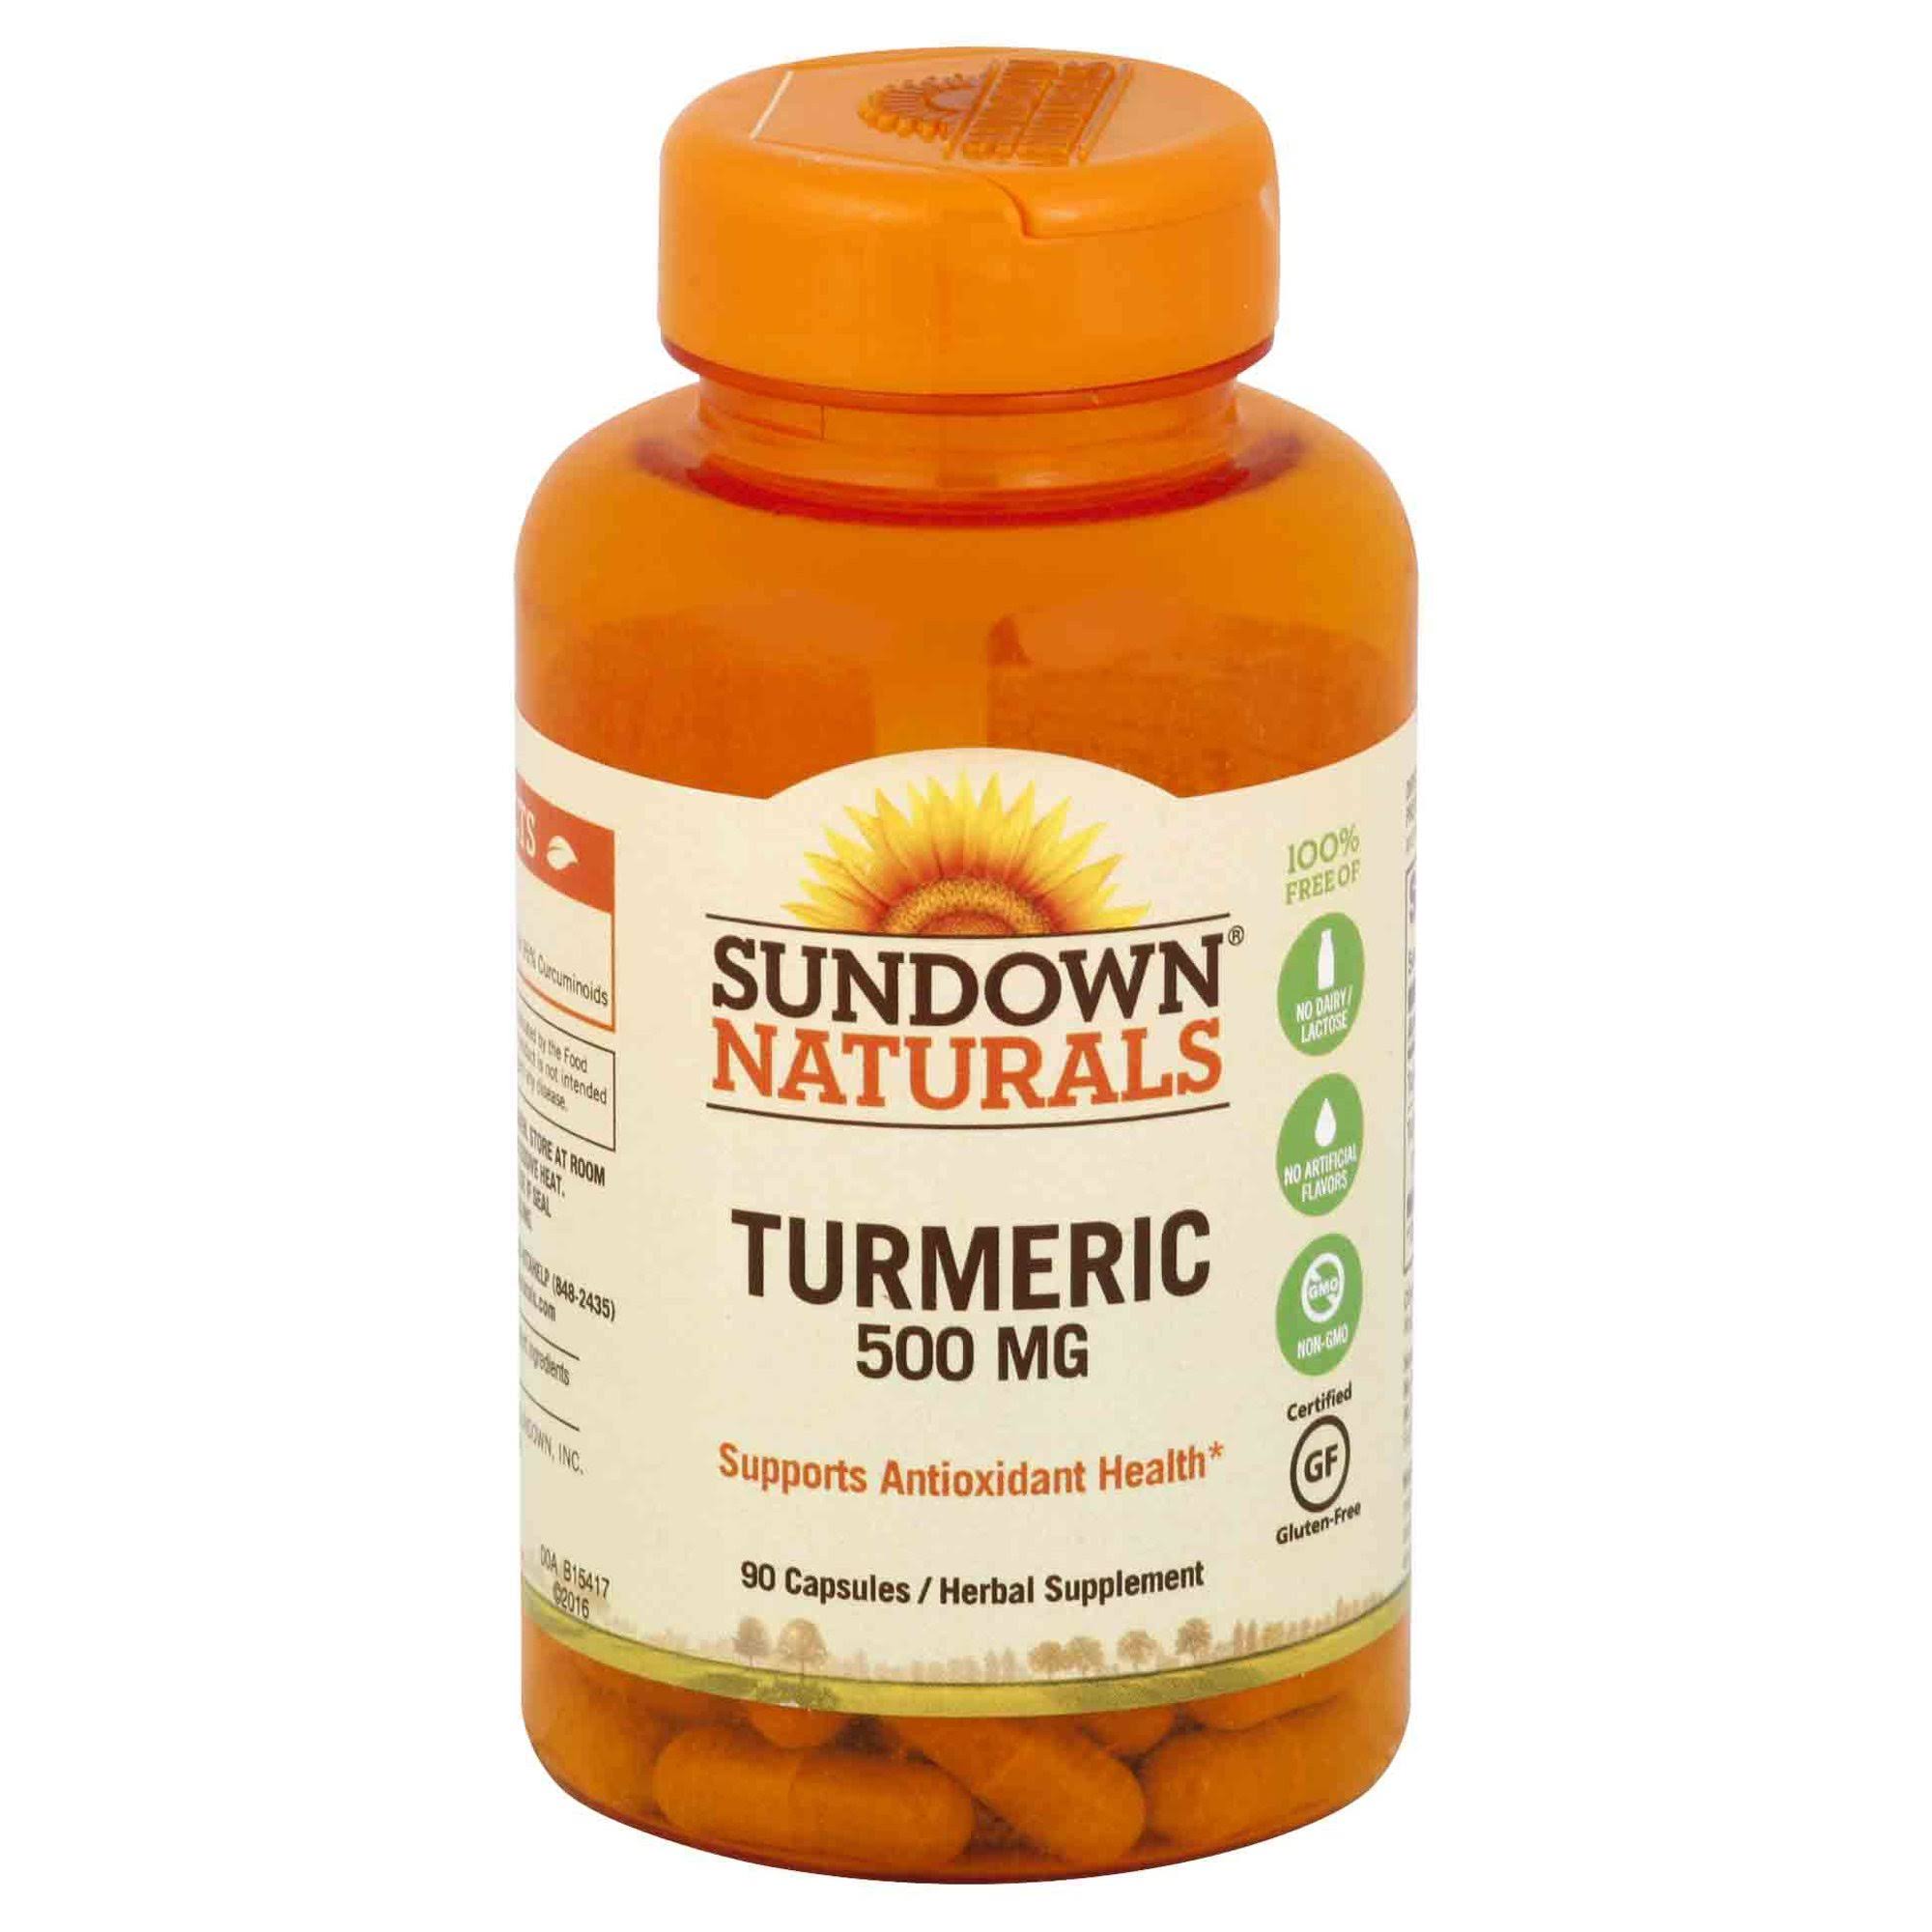 Sundown Naturals Turmeric Extract - 450mg, 90 Capsules